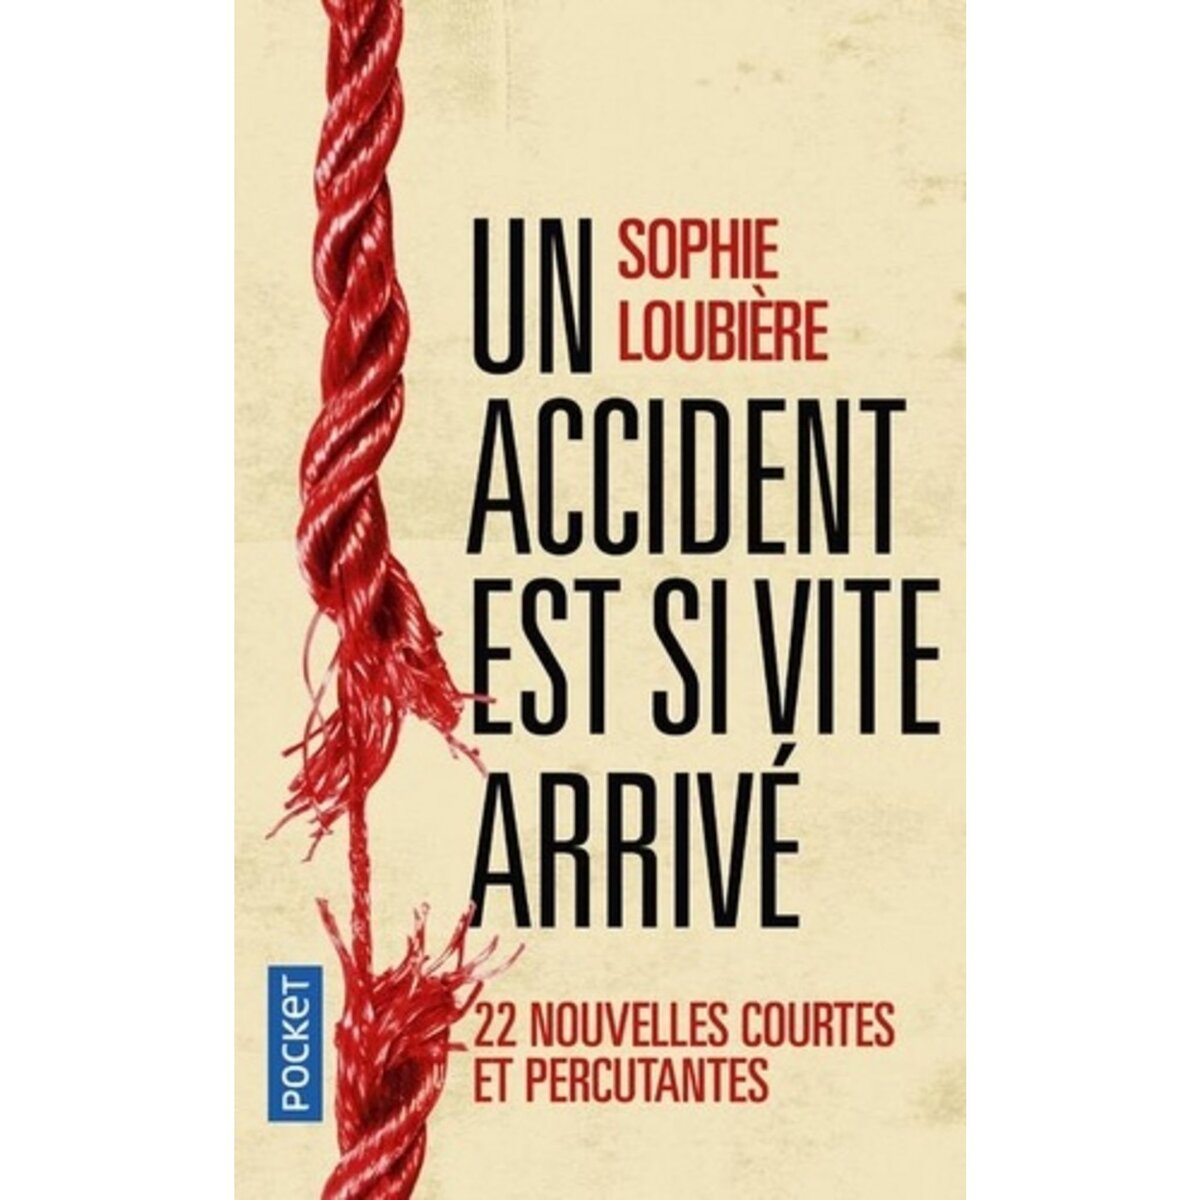  UN ACCIDENT EST SI VITE ARRIVE, Loubière Sophie